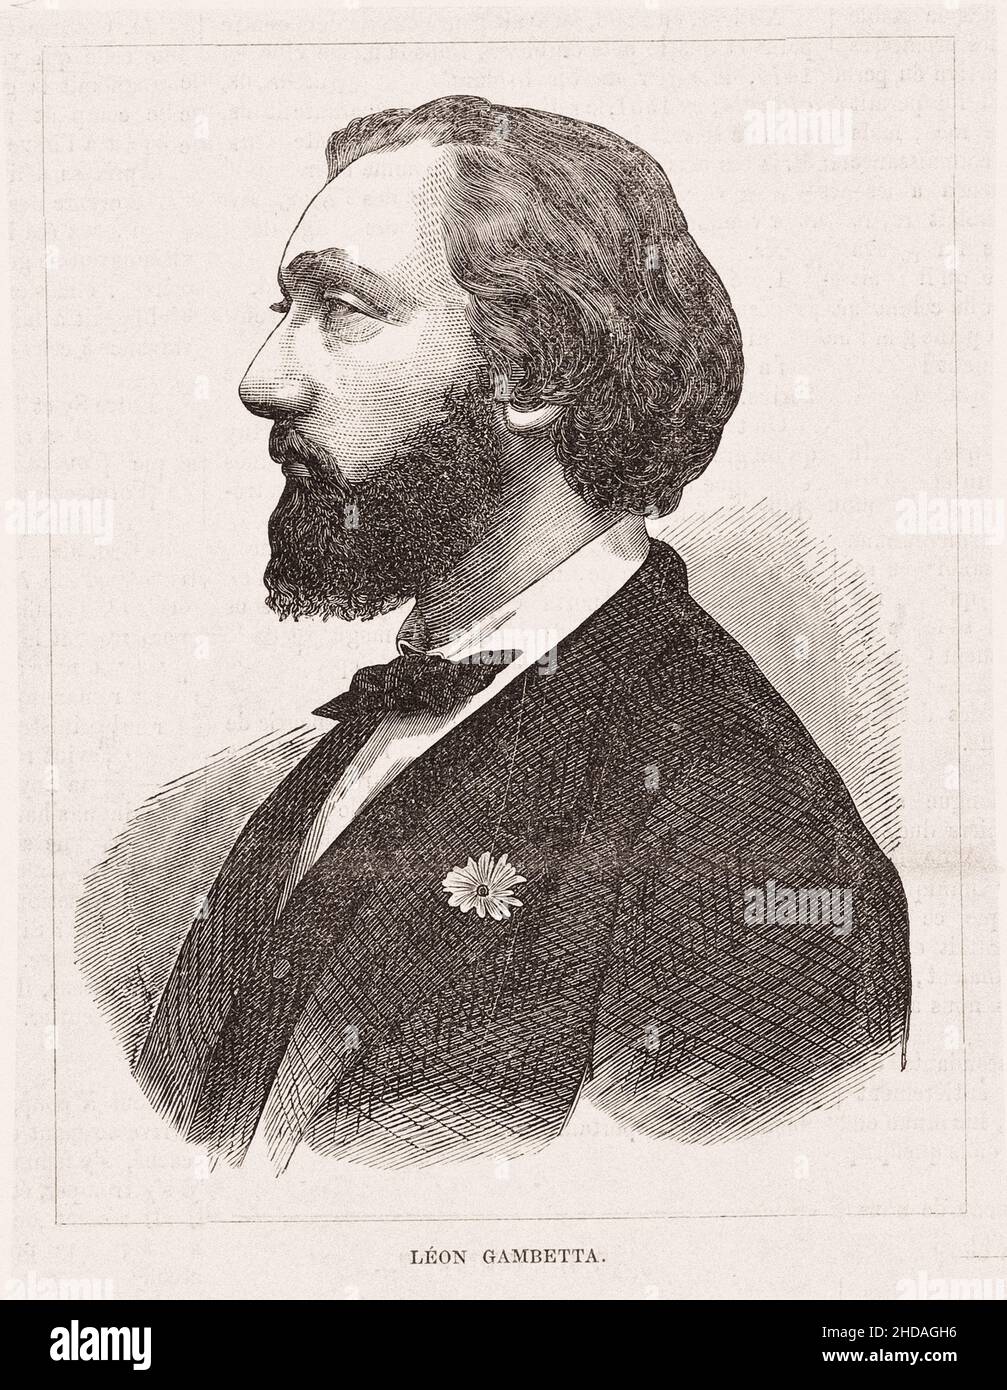 Ritratto del giovane Léon Gambetta. Leon Michel Gambetta (1838 - 1882) - politico repubblicano francese, primo ministro e ministro degli affari esteri di Foto Stock